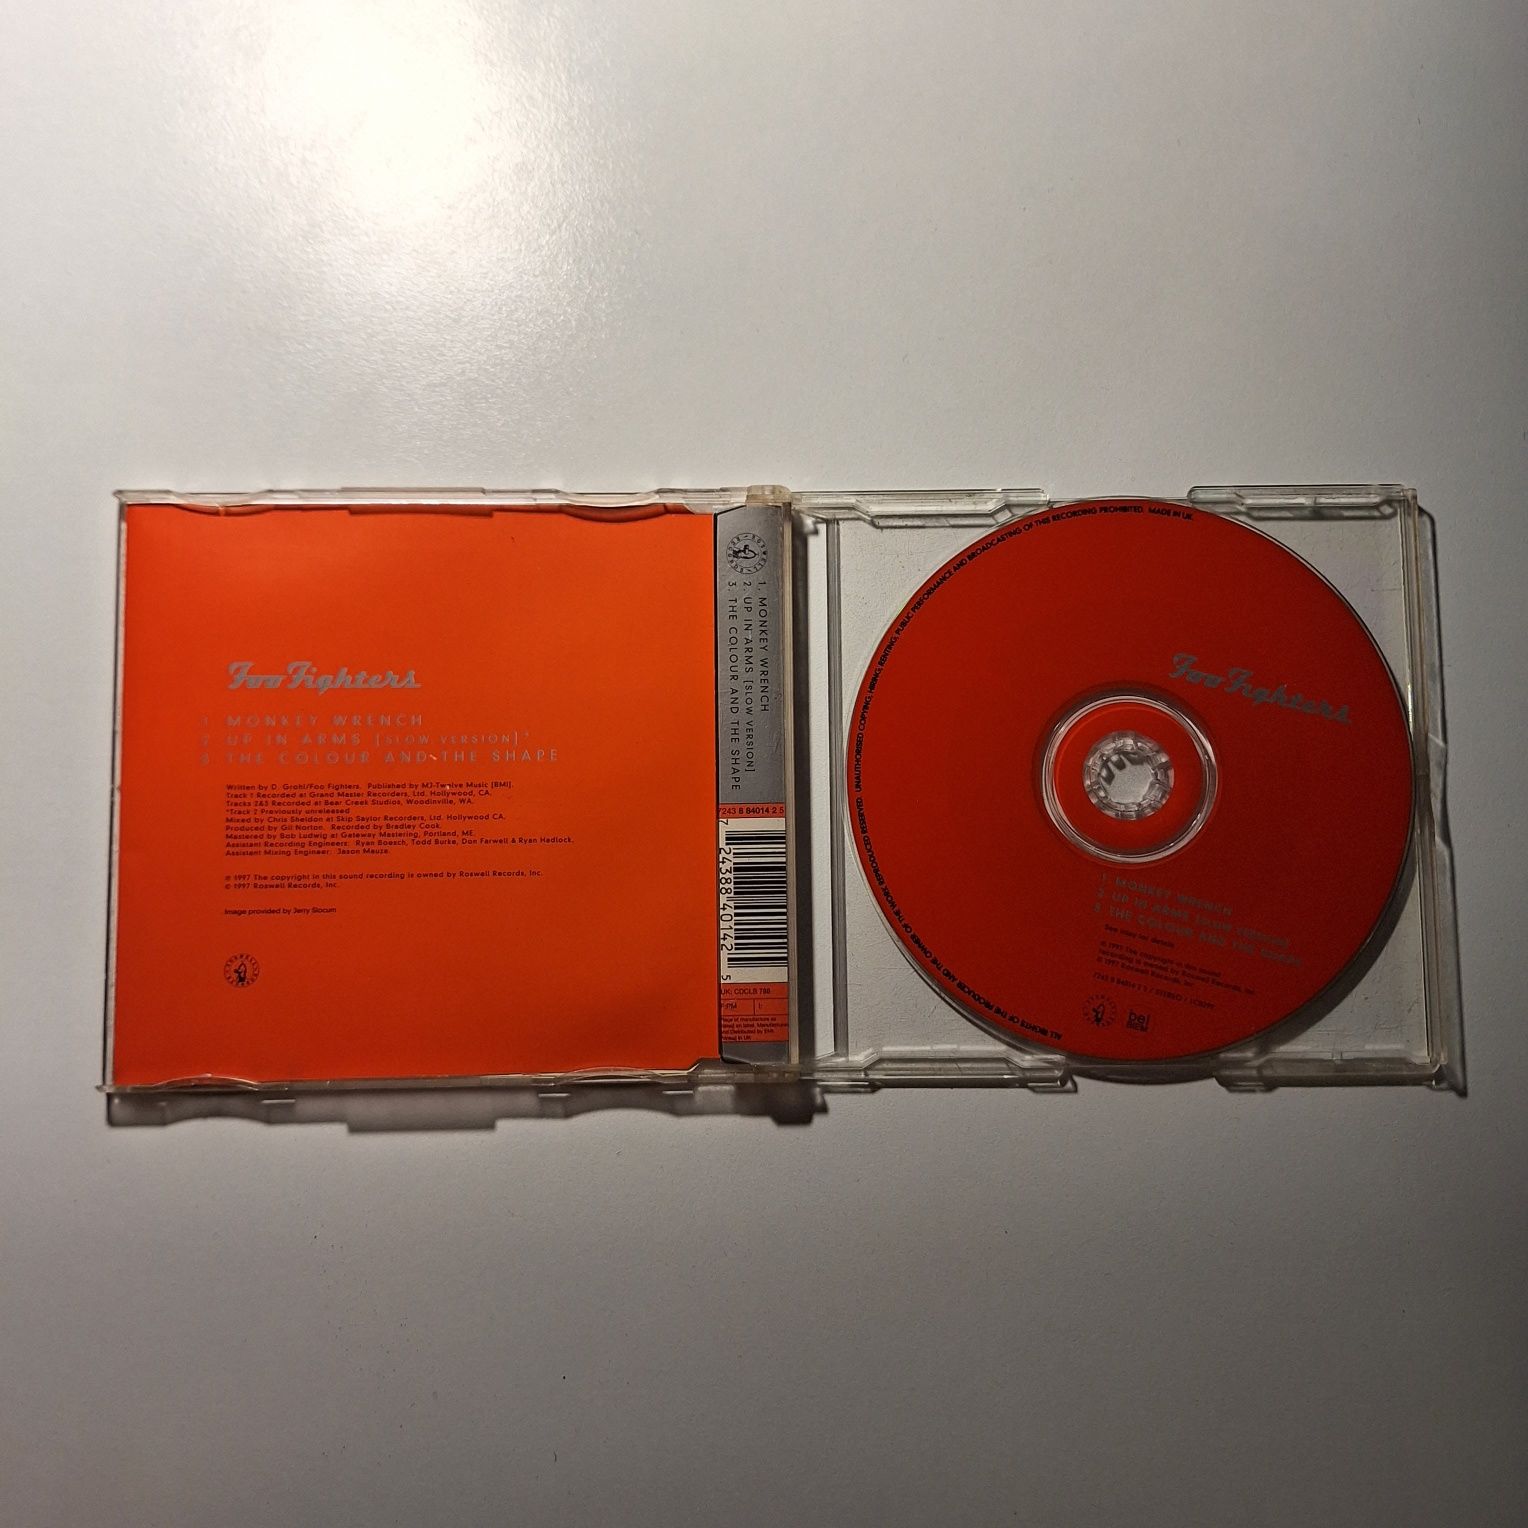 Foo Fighters - Monkey Wrench - singiel (CD)